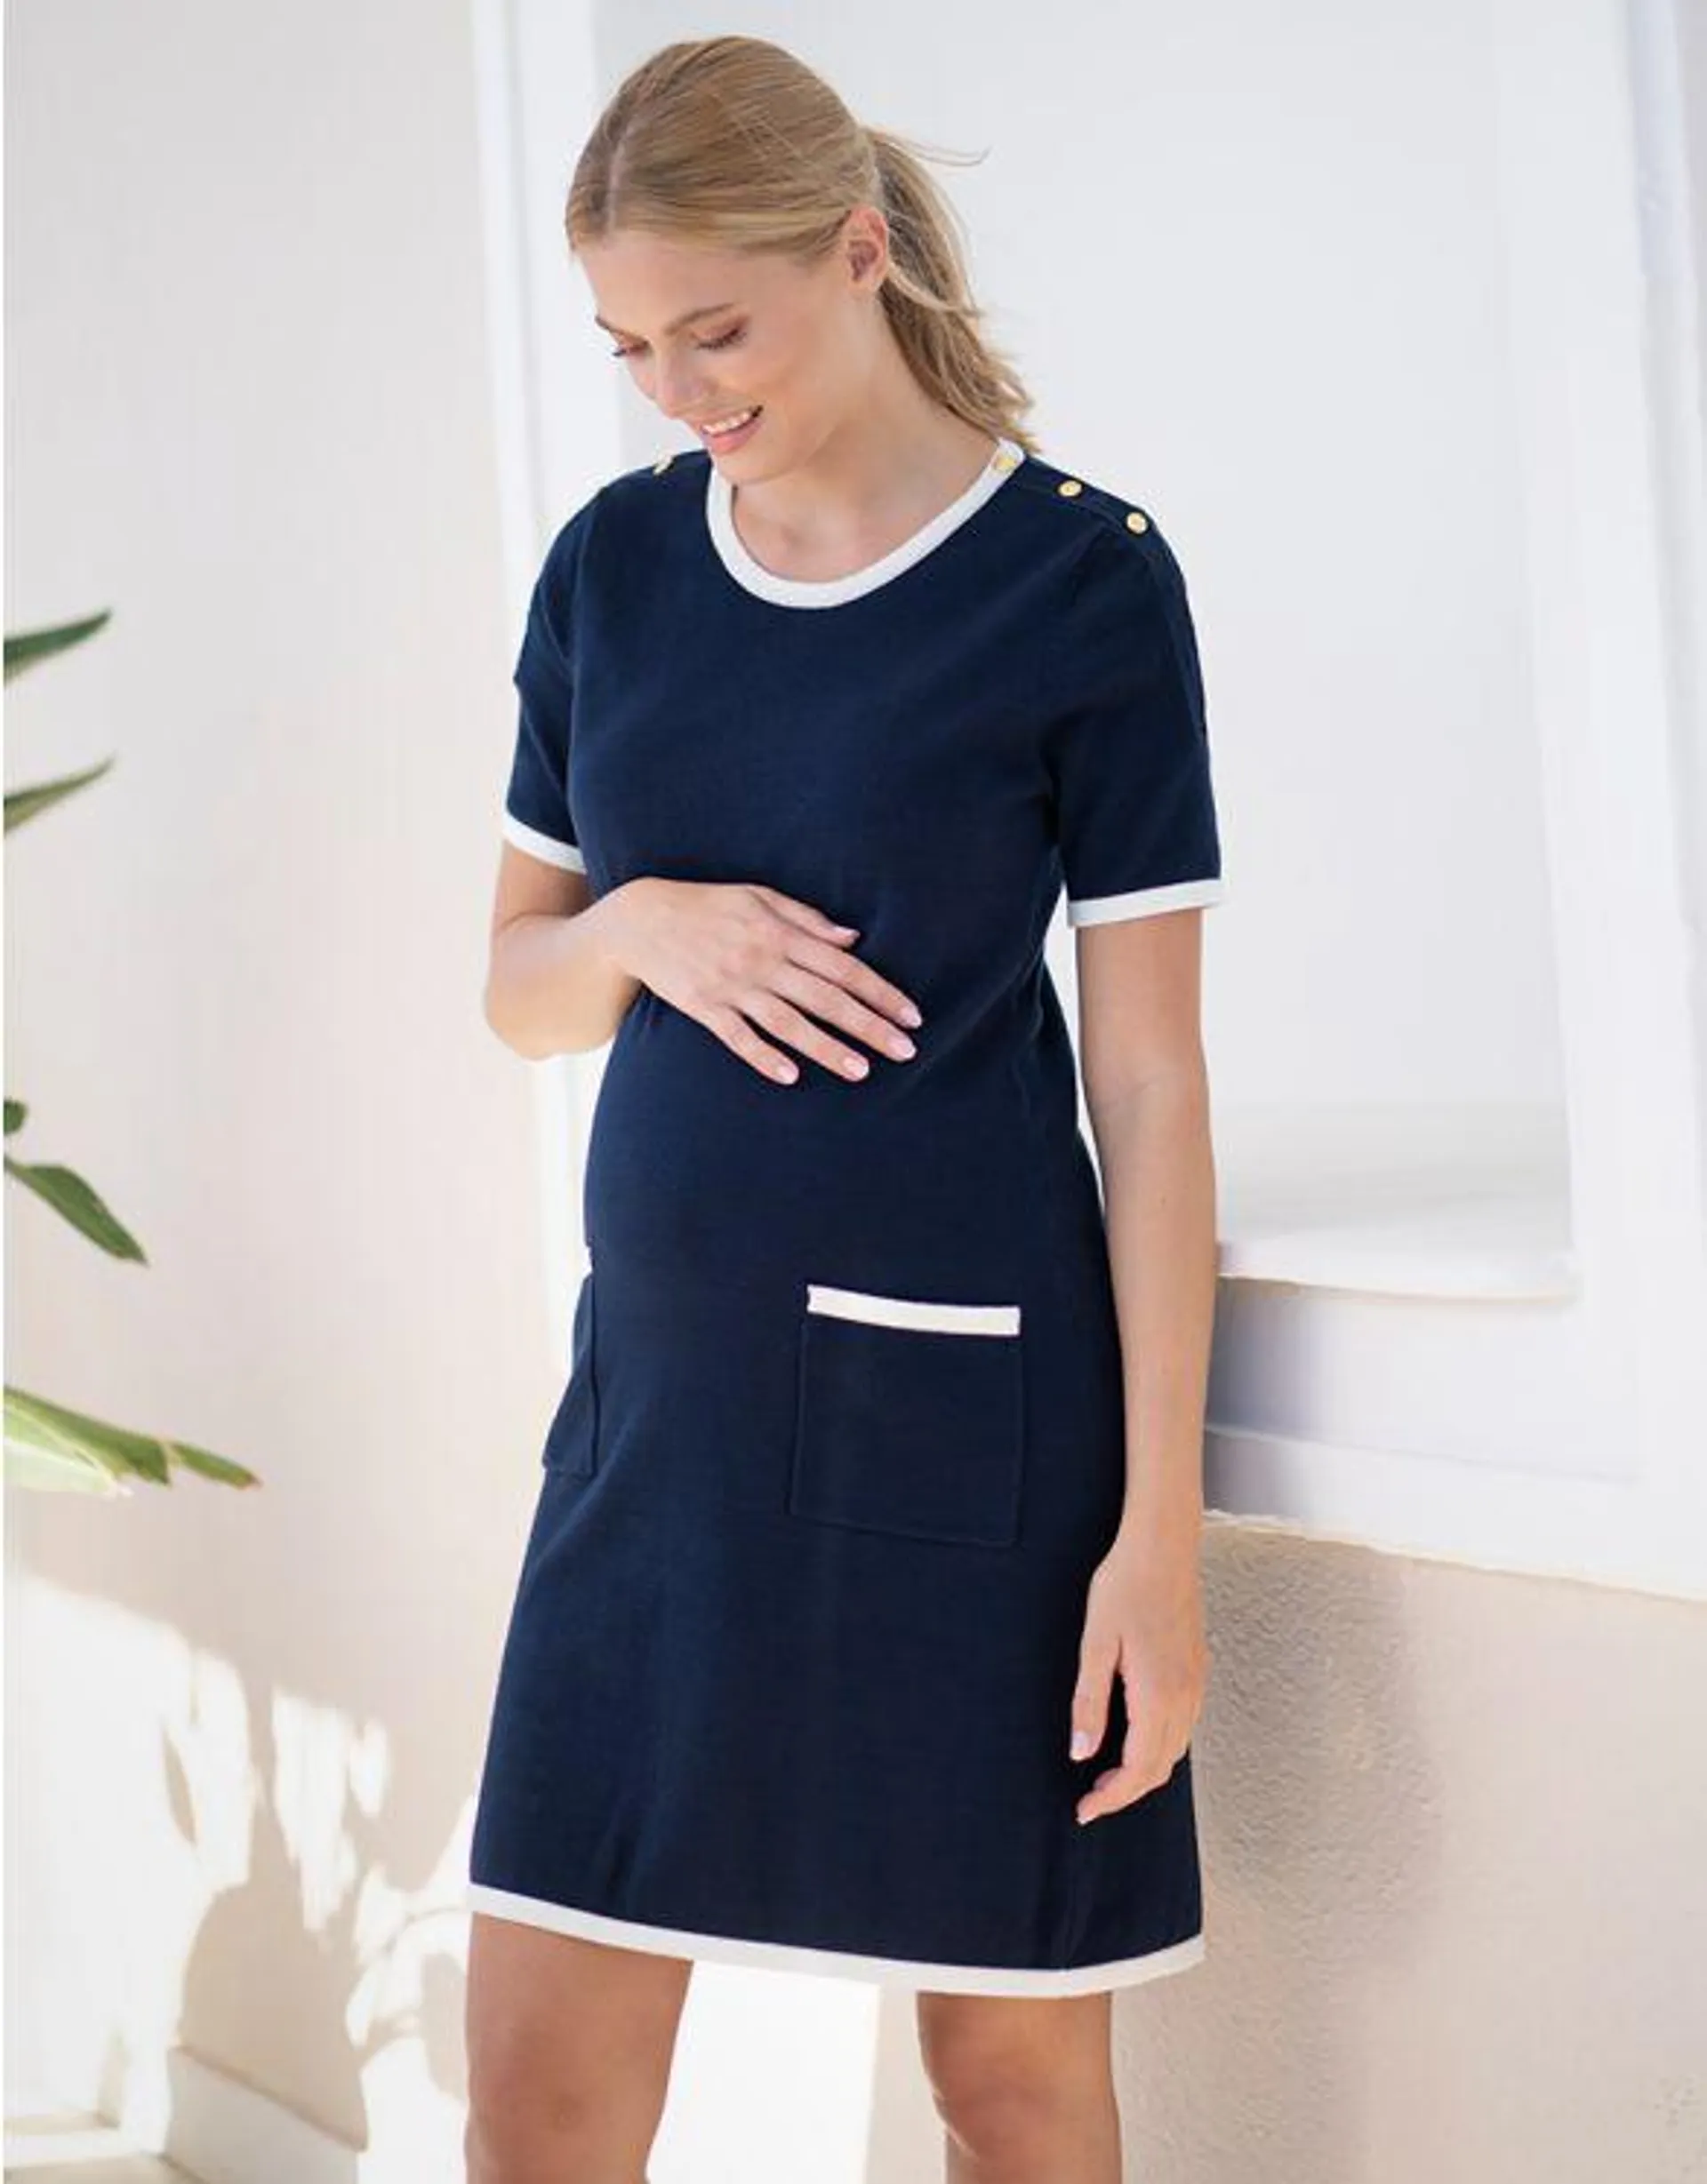 Navy A-Line '60s Maternity to Nursing Shift Dress